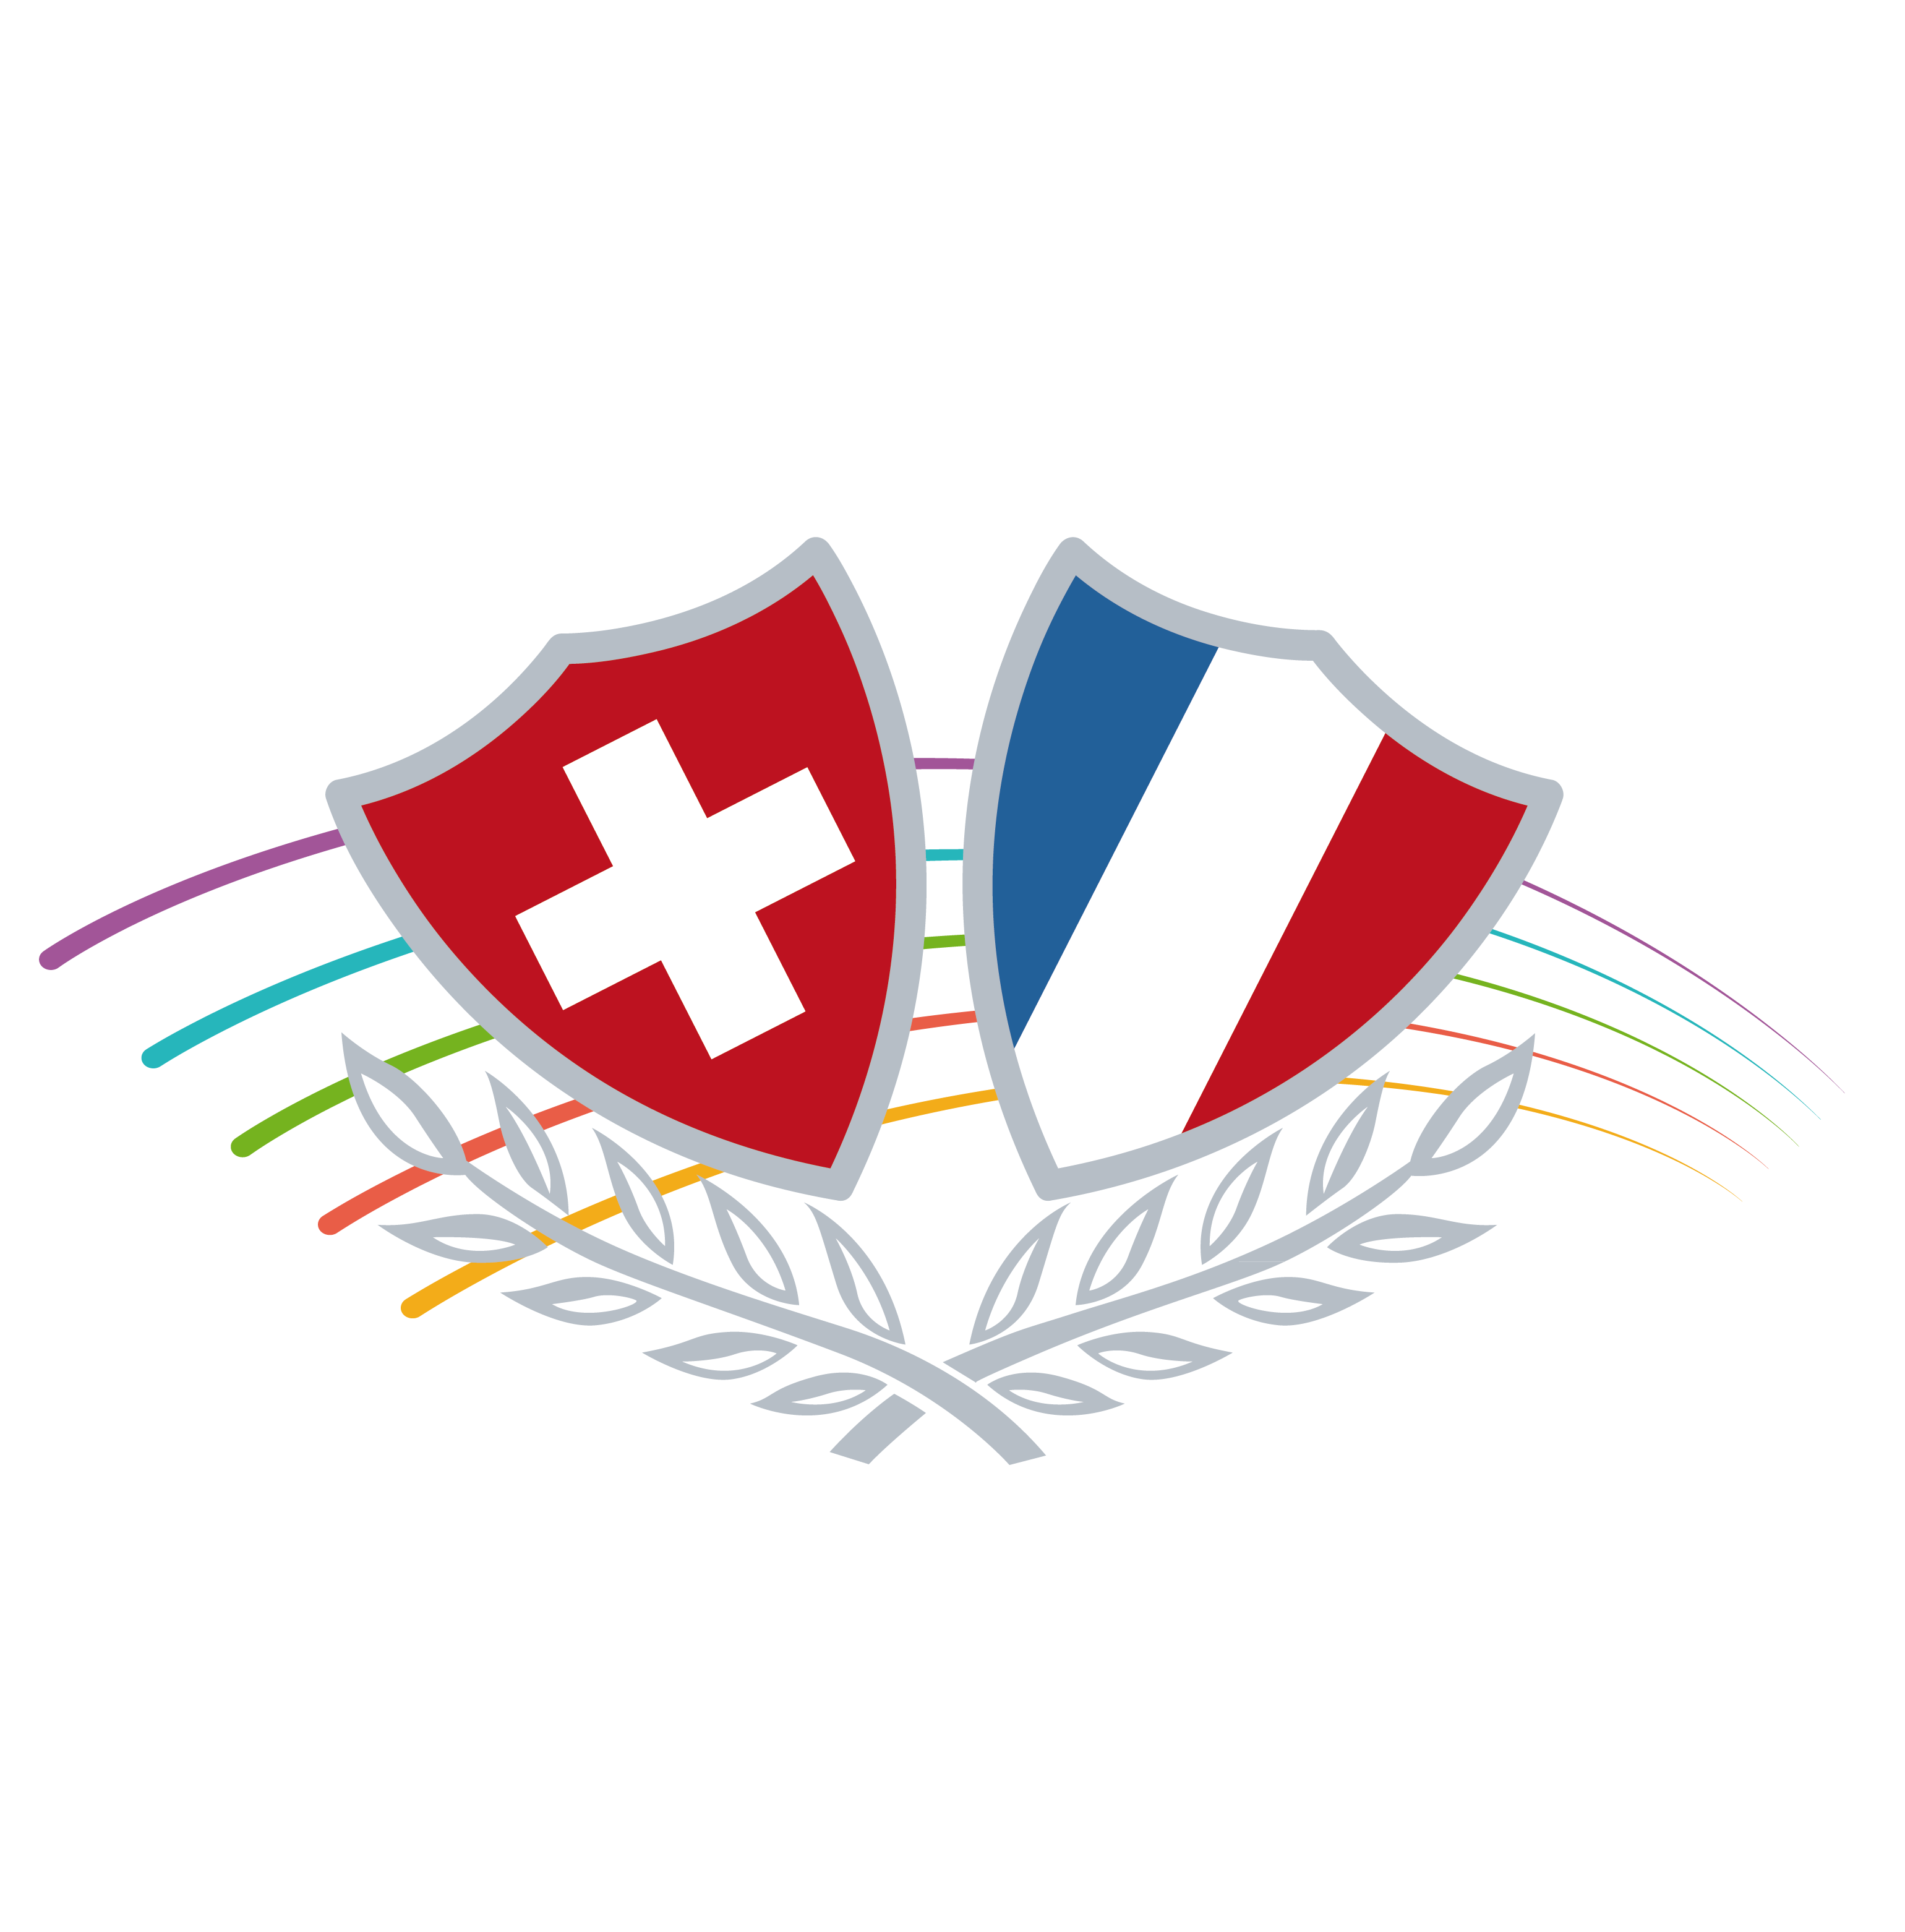 Les Enfants des 2 Républiques, fanfare de St-Gingolph (France/Suisse)